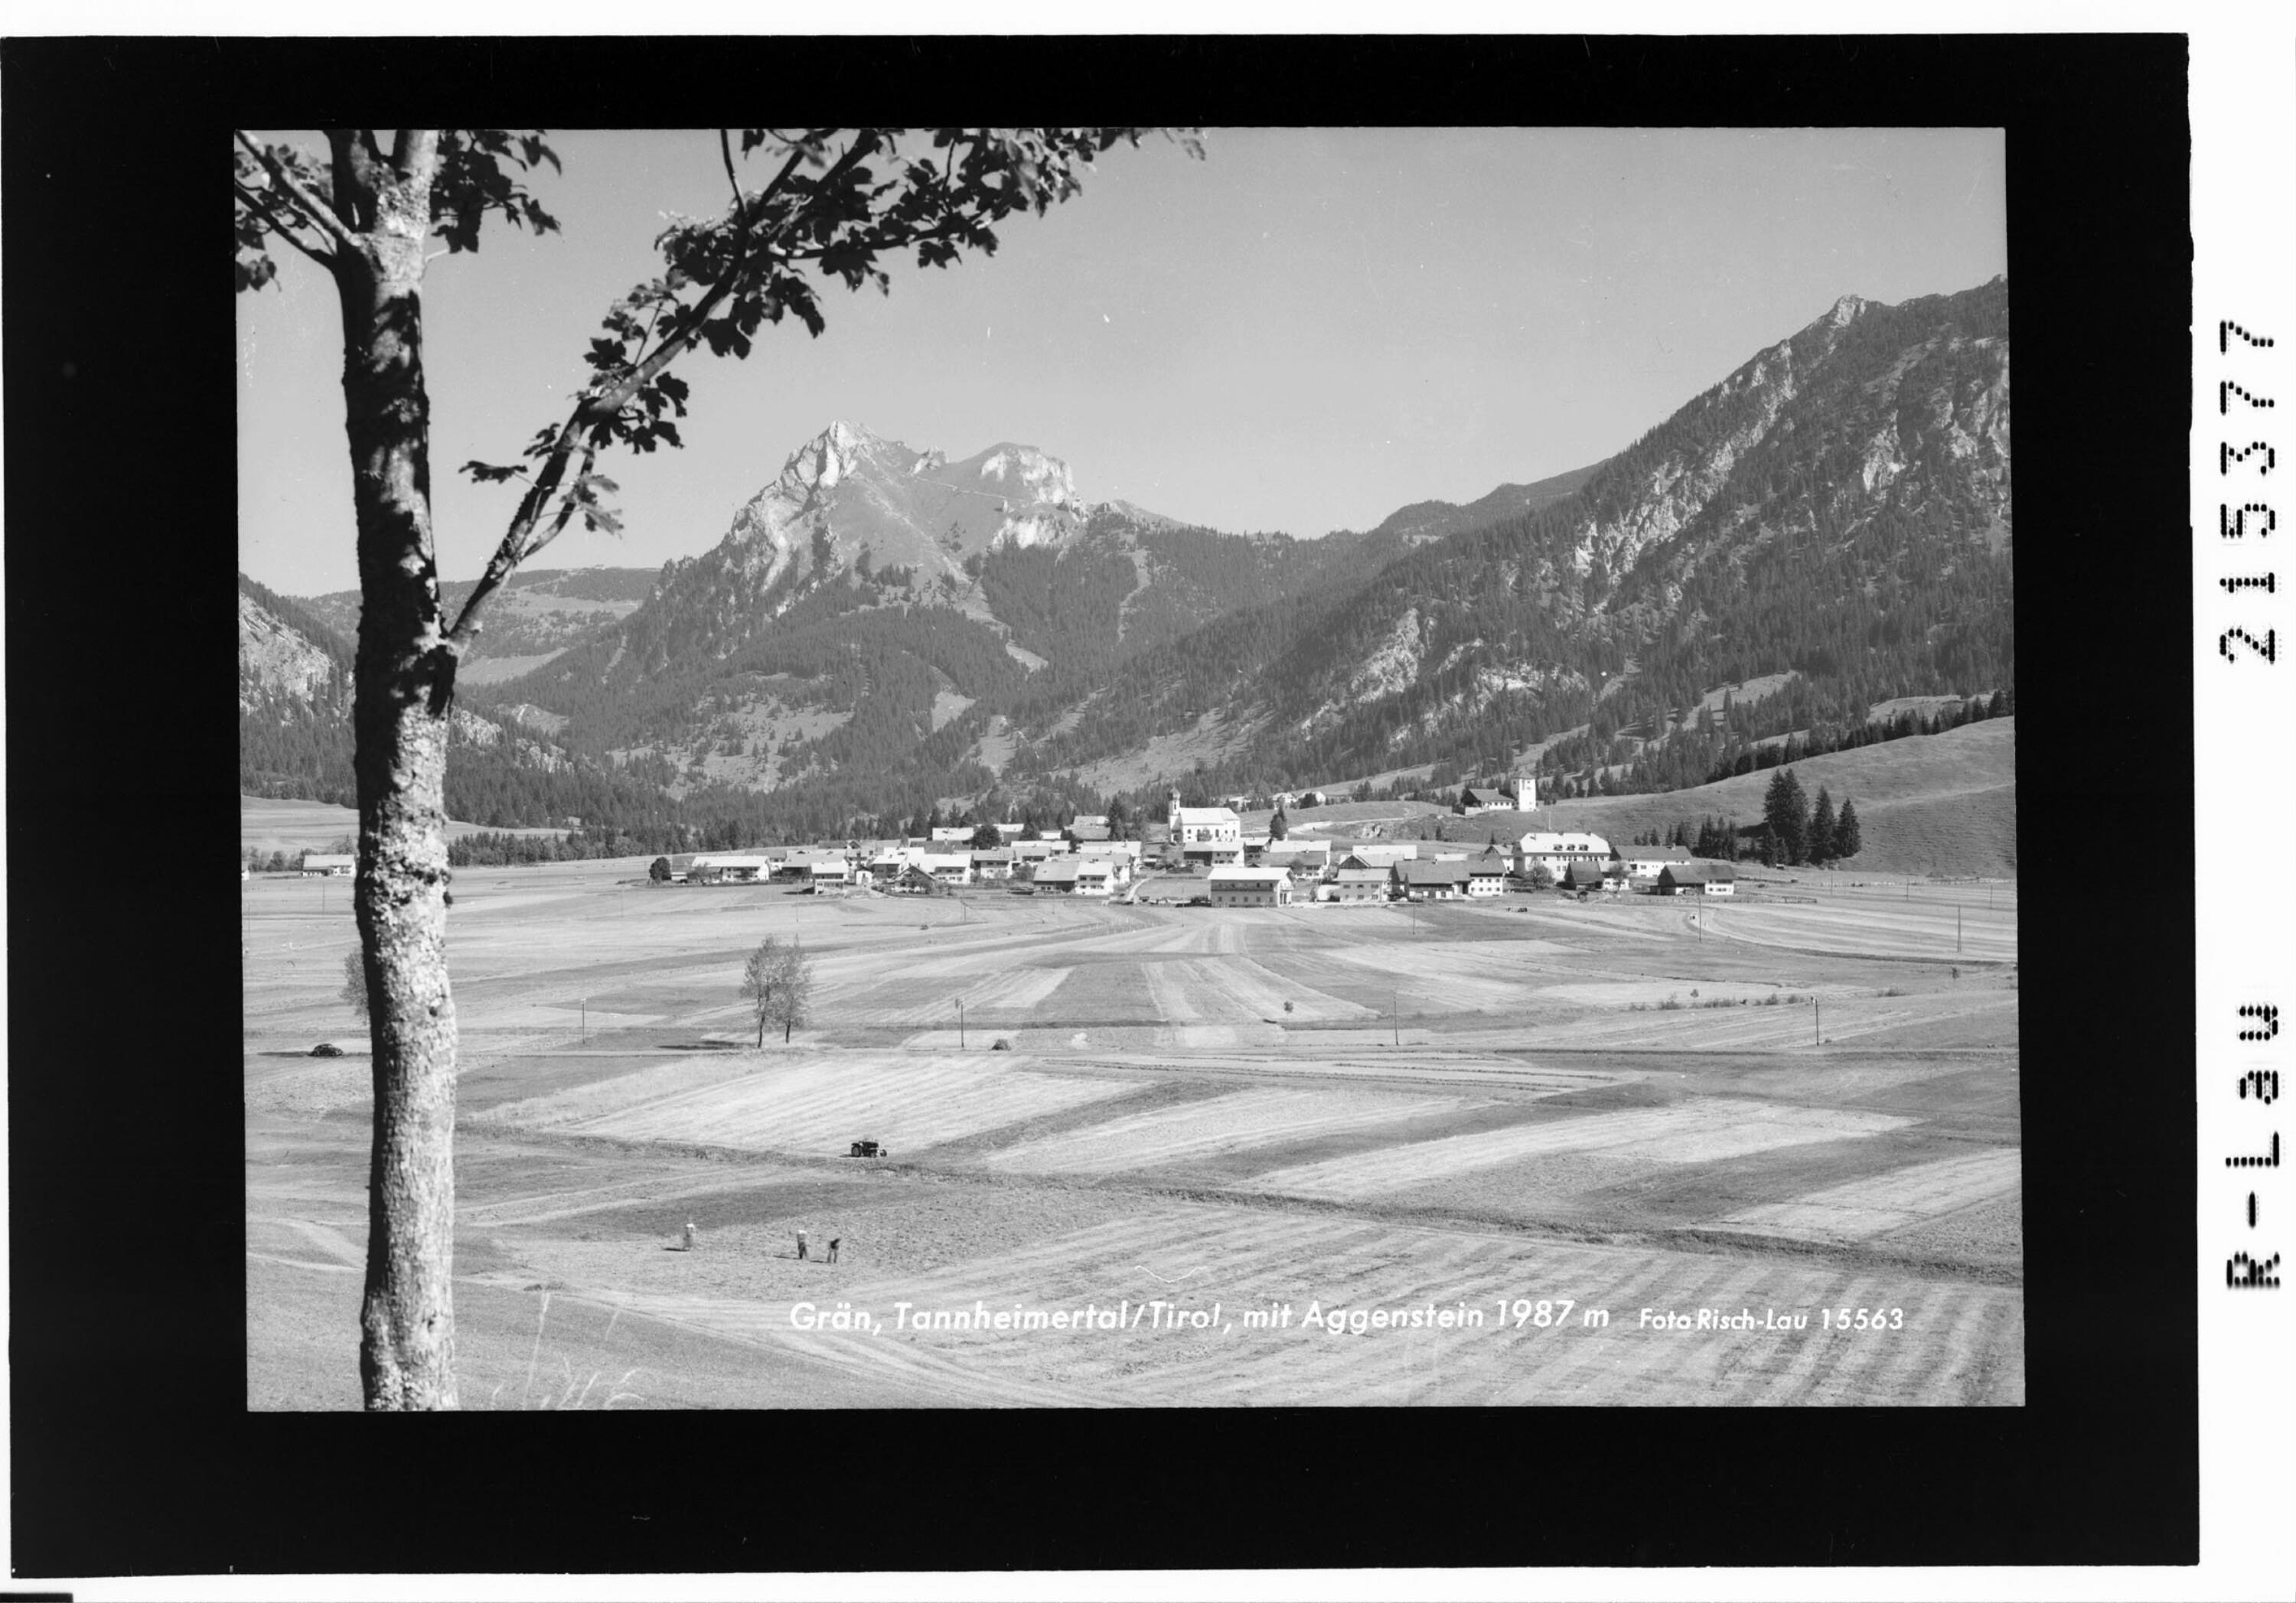 Grän im Tannheimertal / Tirol mit Aggenstein 1987 m></div>


    <hr>
    <div class=